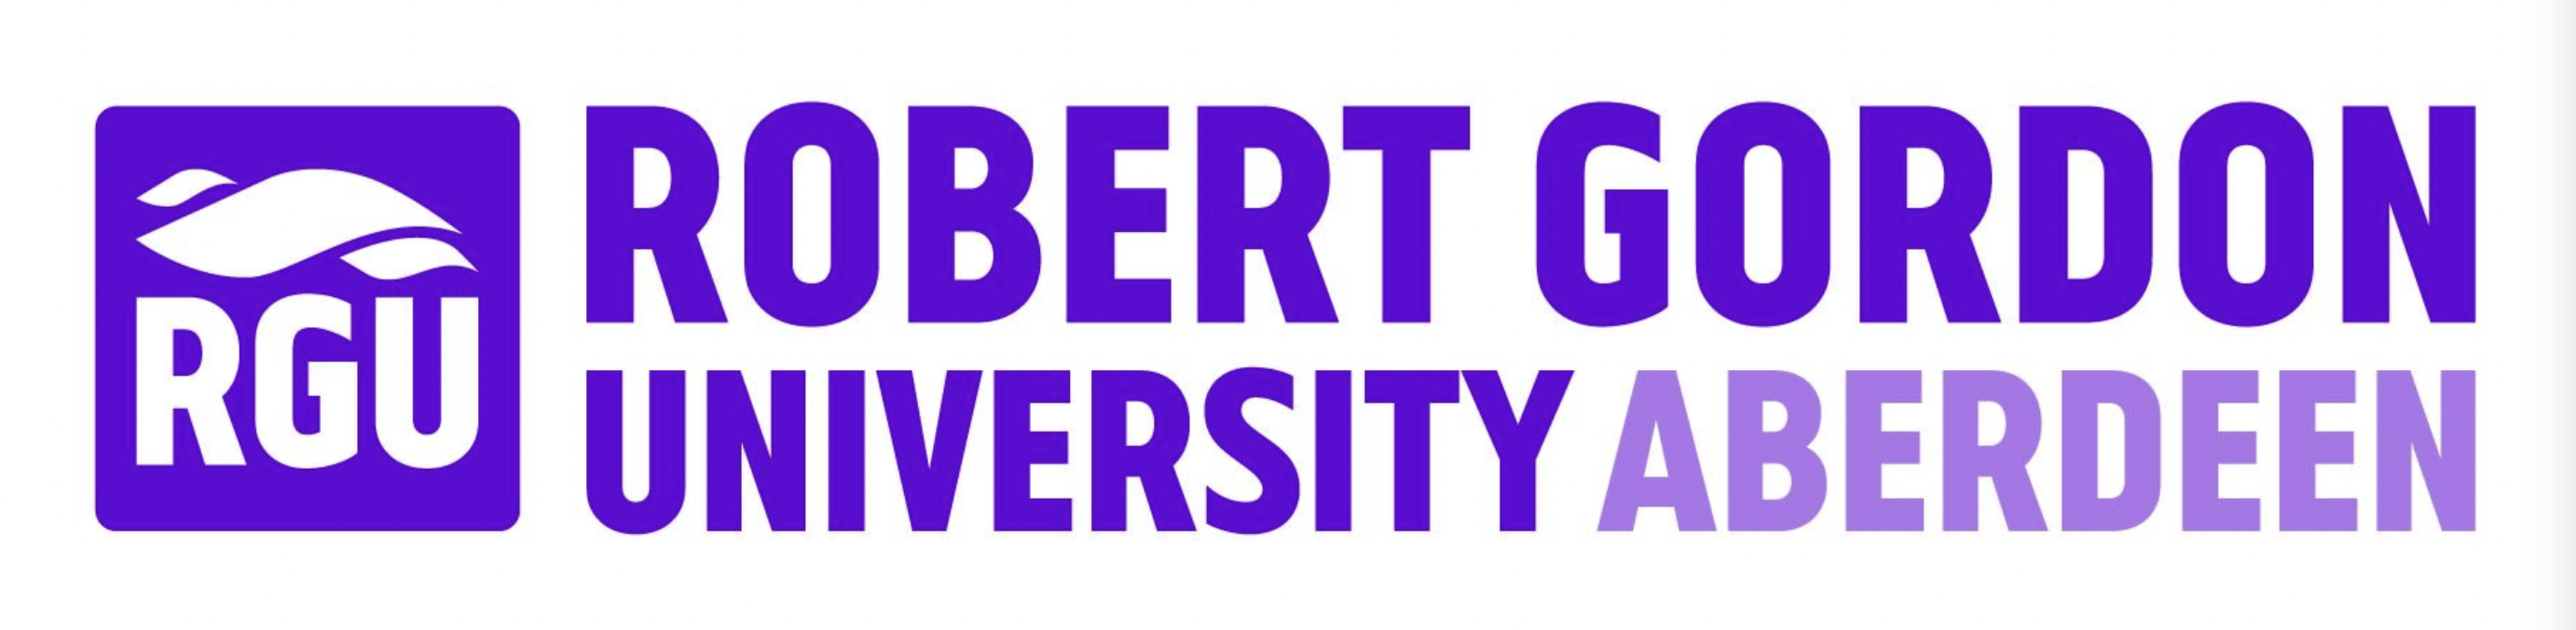 Study at Robert Gordon University, Aberdeen